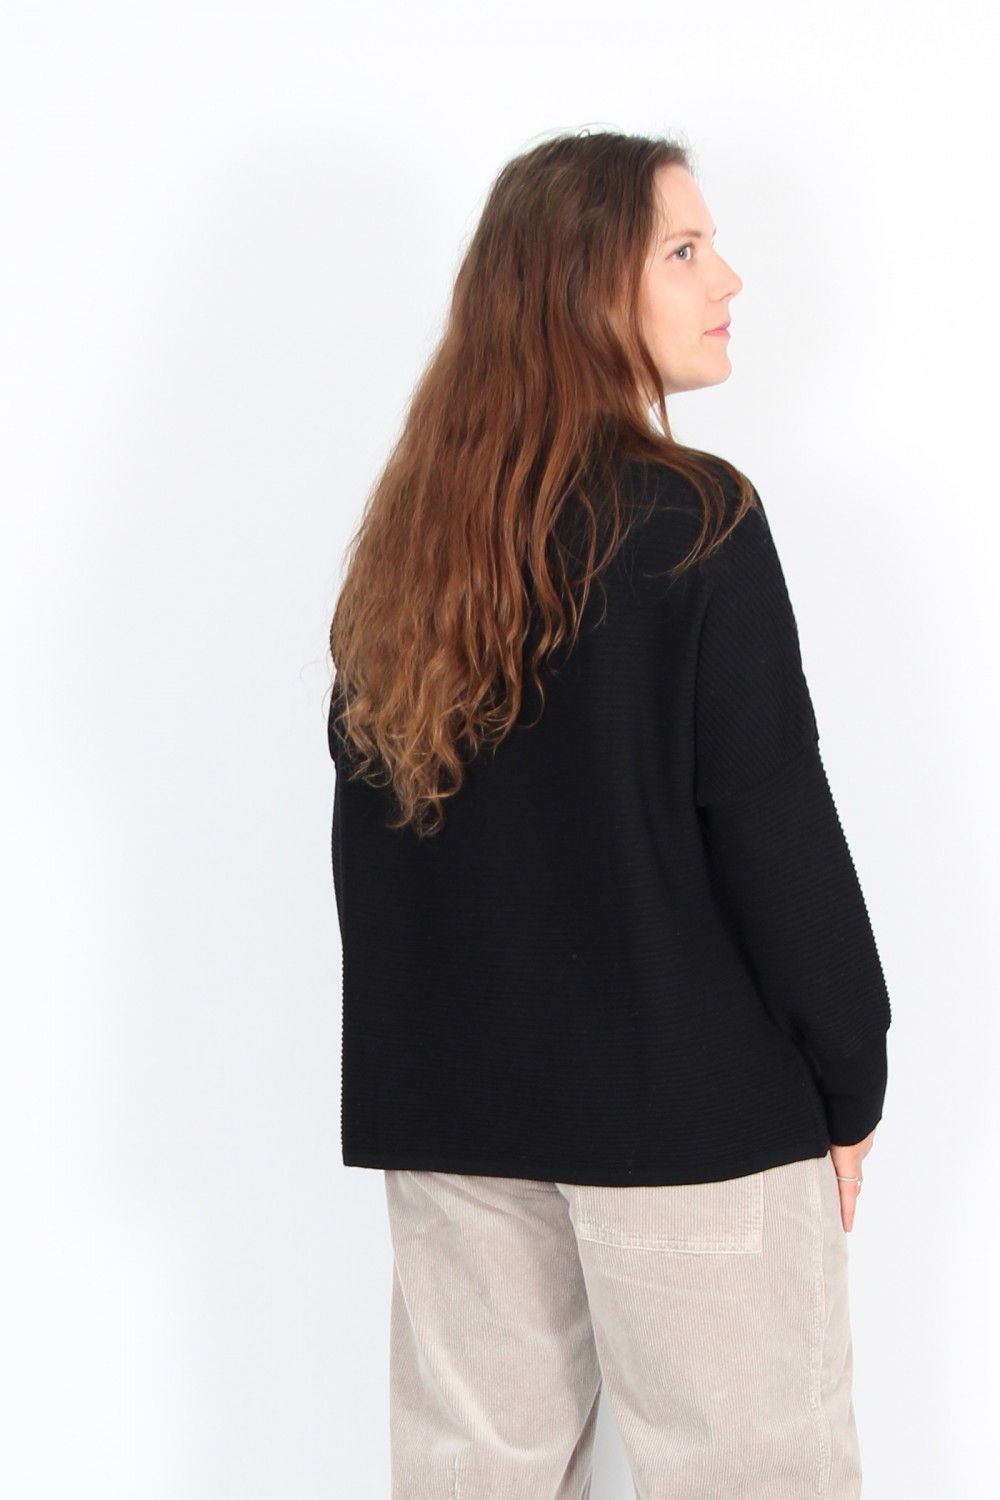 OSKA Pullover Monnocrom 332 Black / 100% Merino Wool